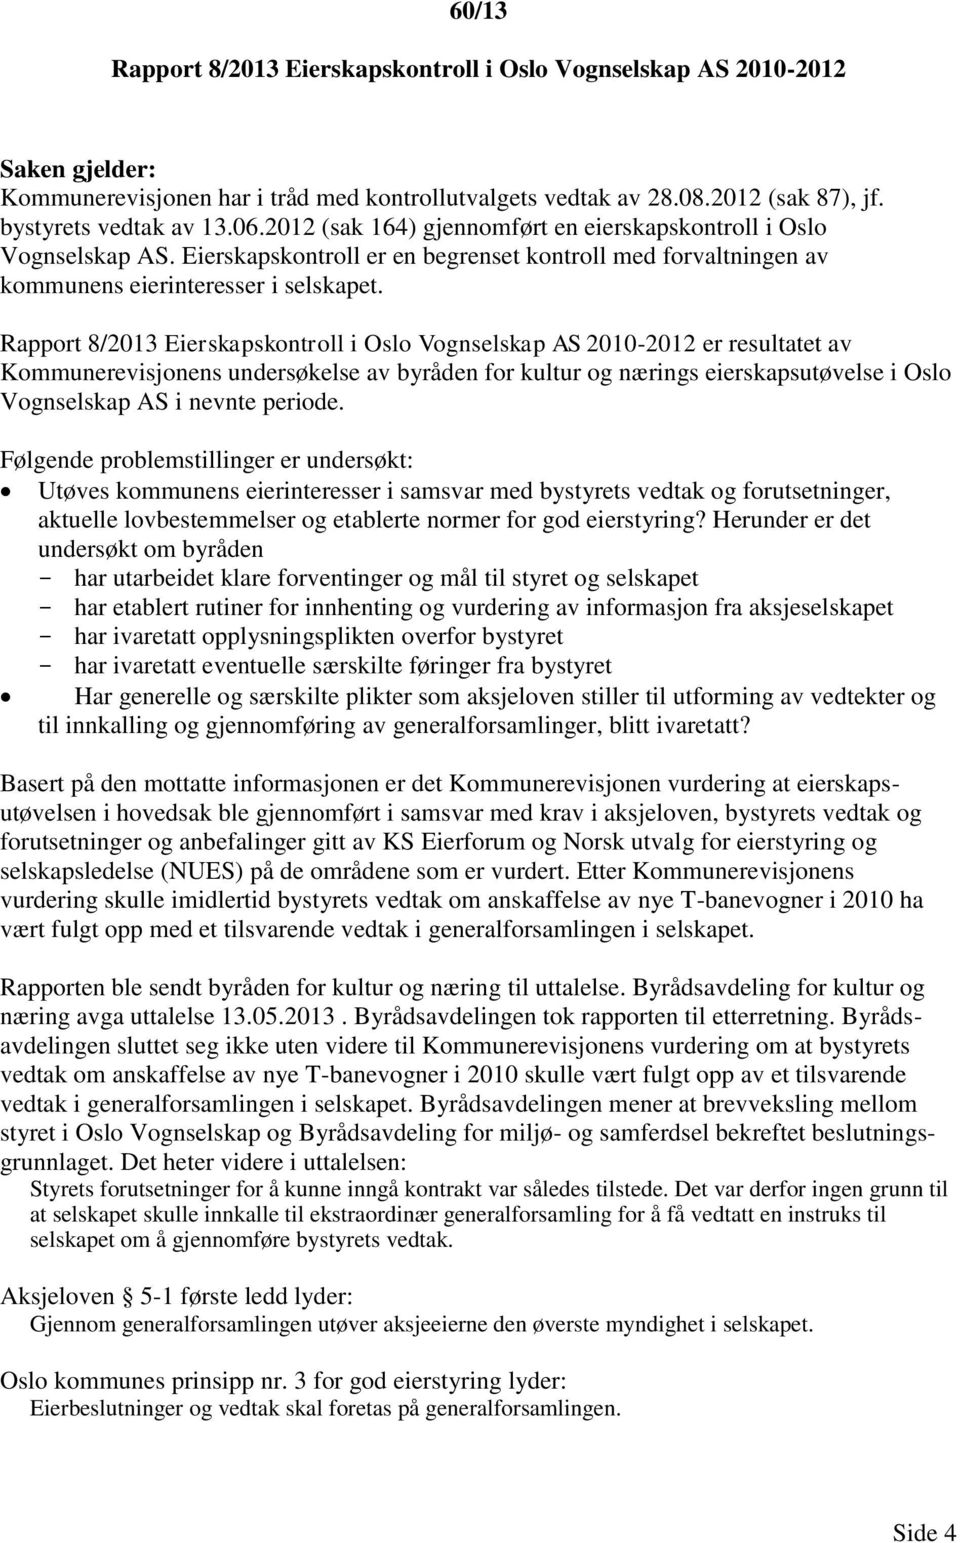 Rapport 8/2013 Eierskapskontroll i Oslo Vognselskap AS 2010-2012 er resultatet av Kommunerevisjonens undersøkelse av byråden for kultur og nærings eierskapsutøvelse i Oslo Vognselskap AS i nevnte